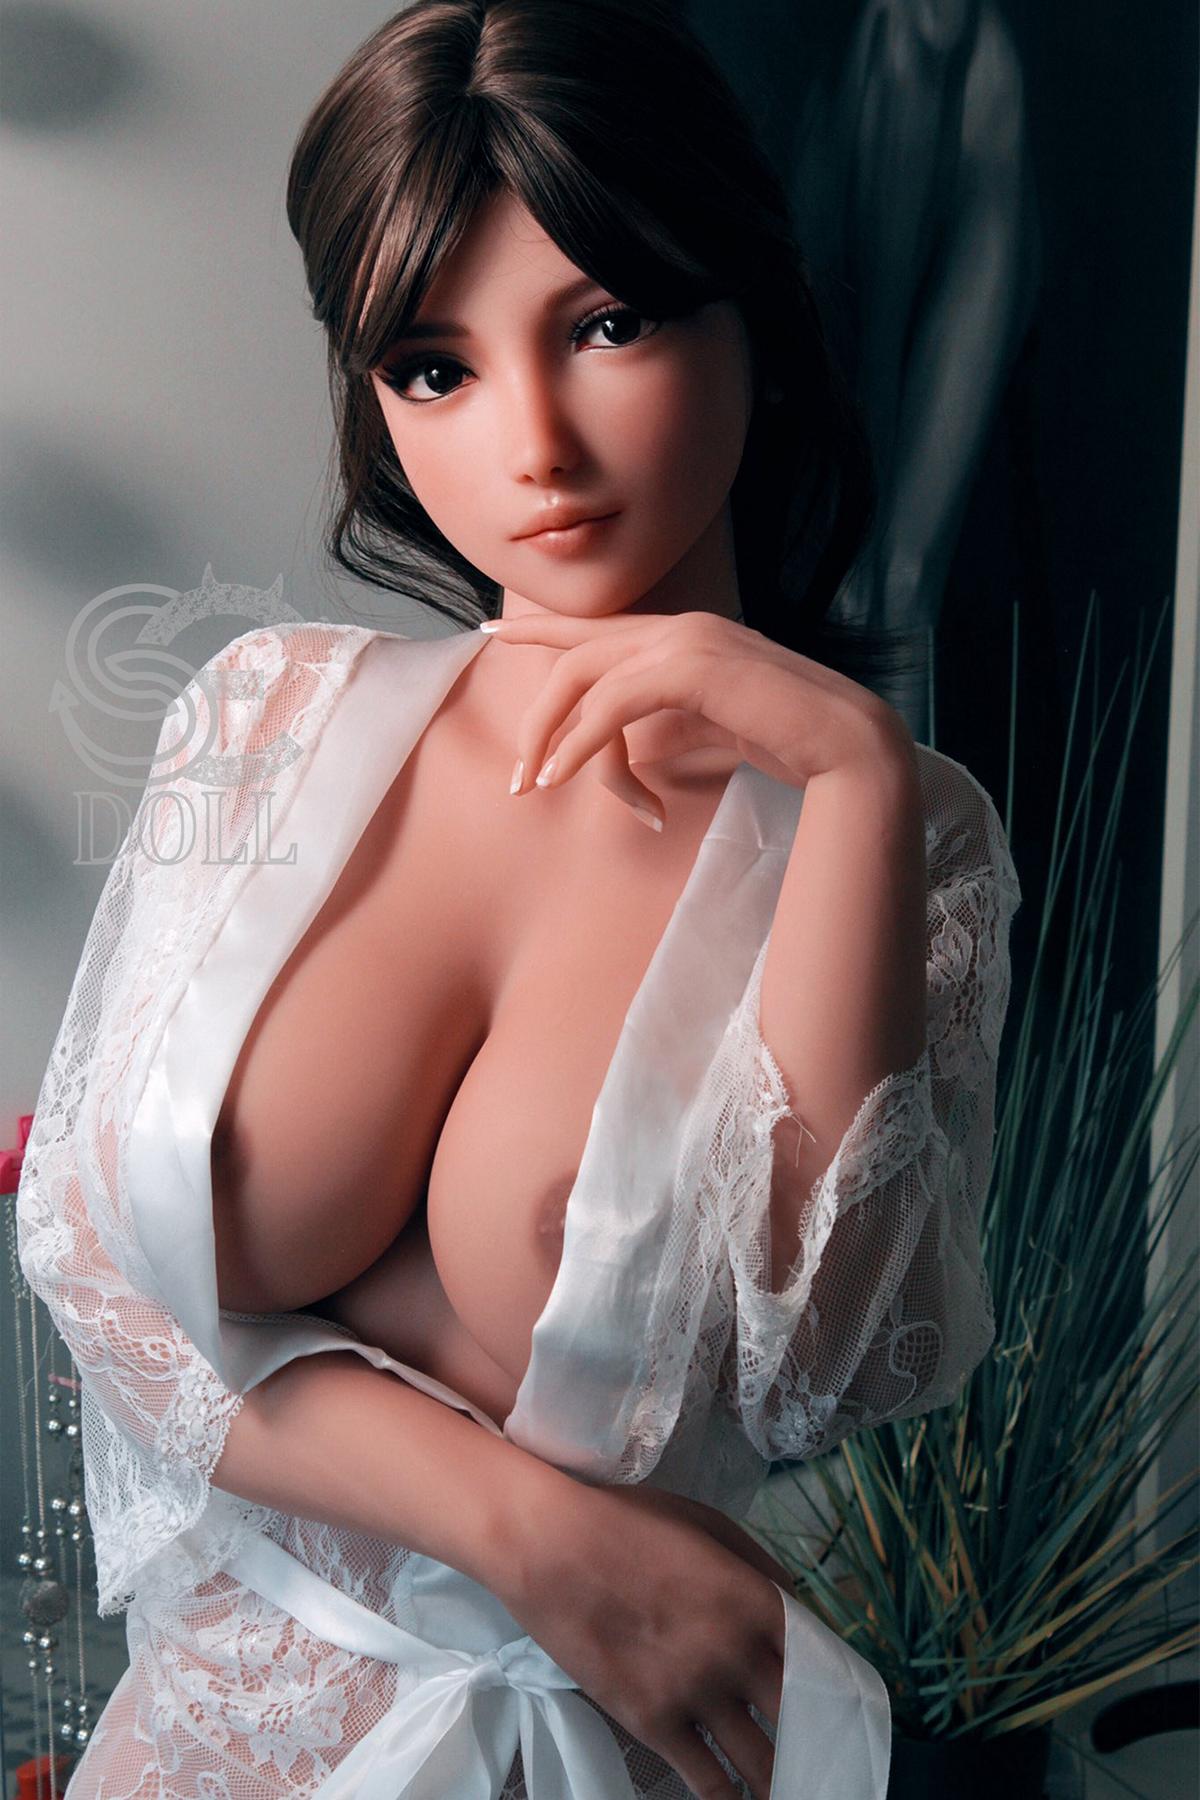 Sex doll Elanie | Cute teen sexdoll with big boobs